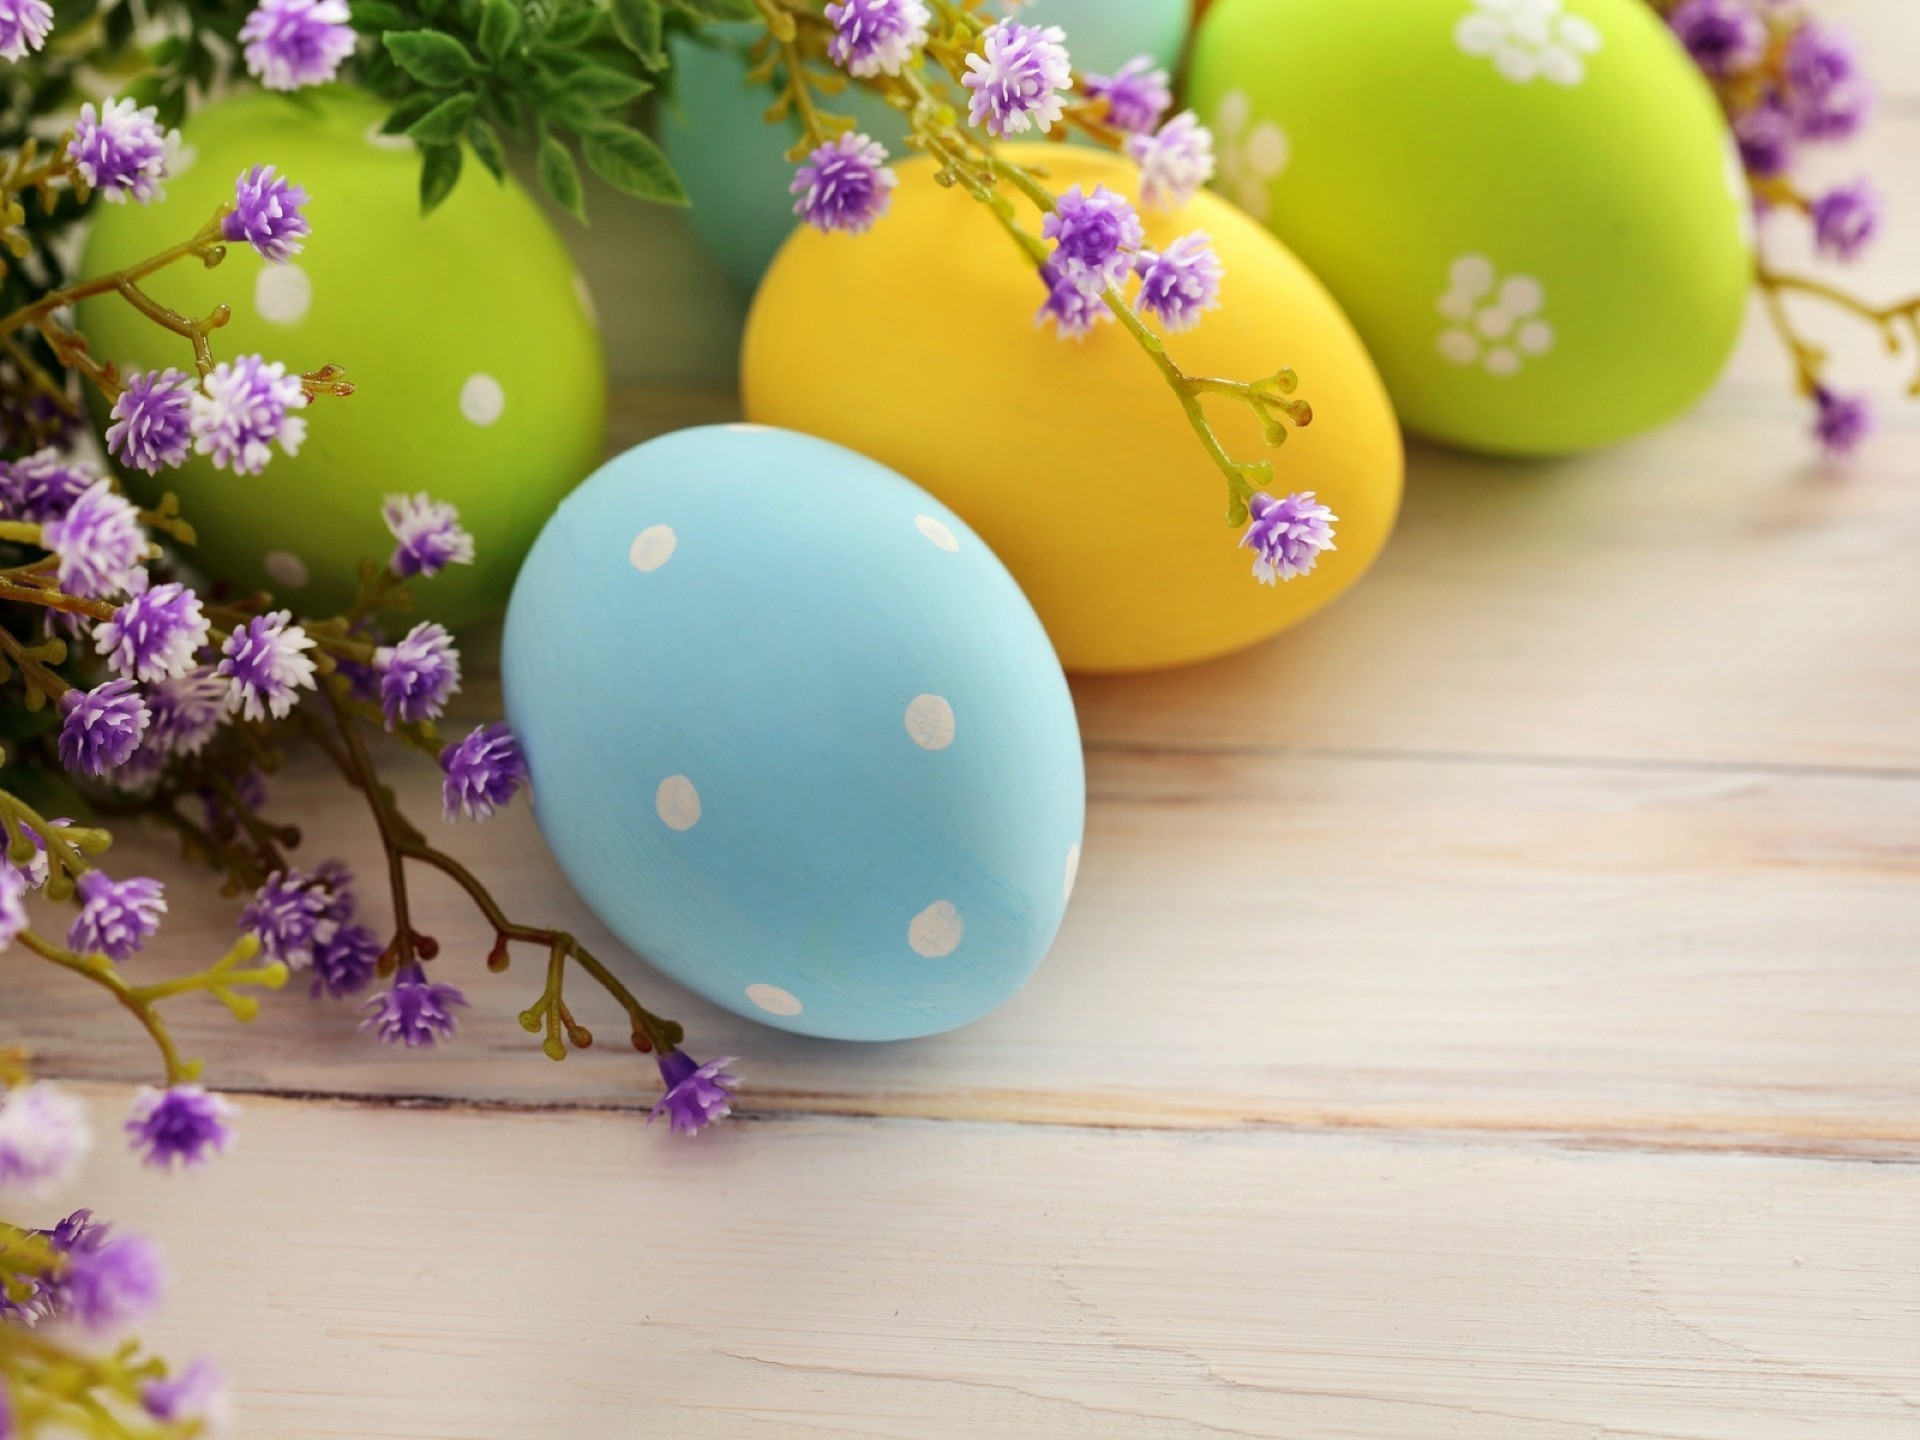 пасха цветок украшения яйцо цвет рабочего стола праздник деревянные традиционные природа пасхальное яйцо таблица яркий